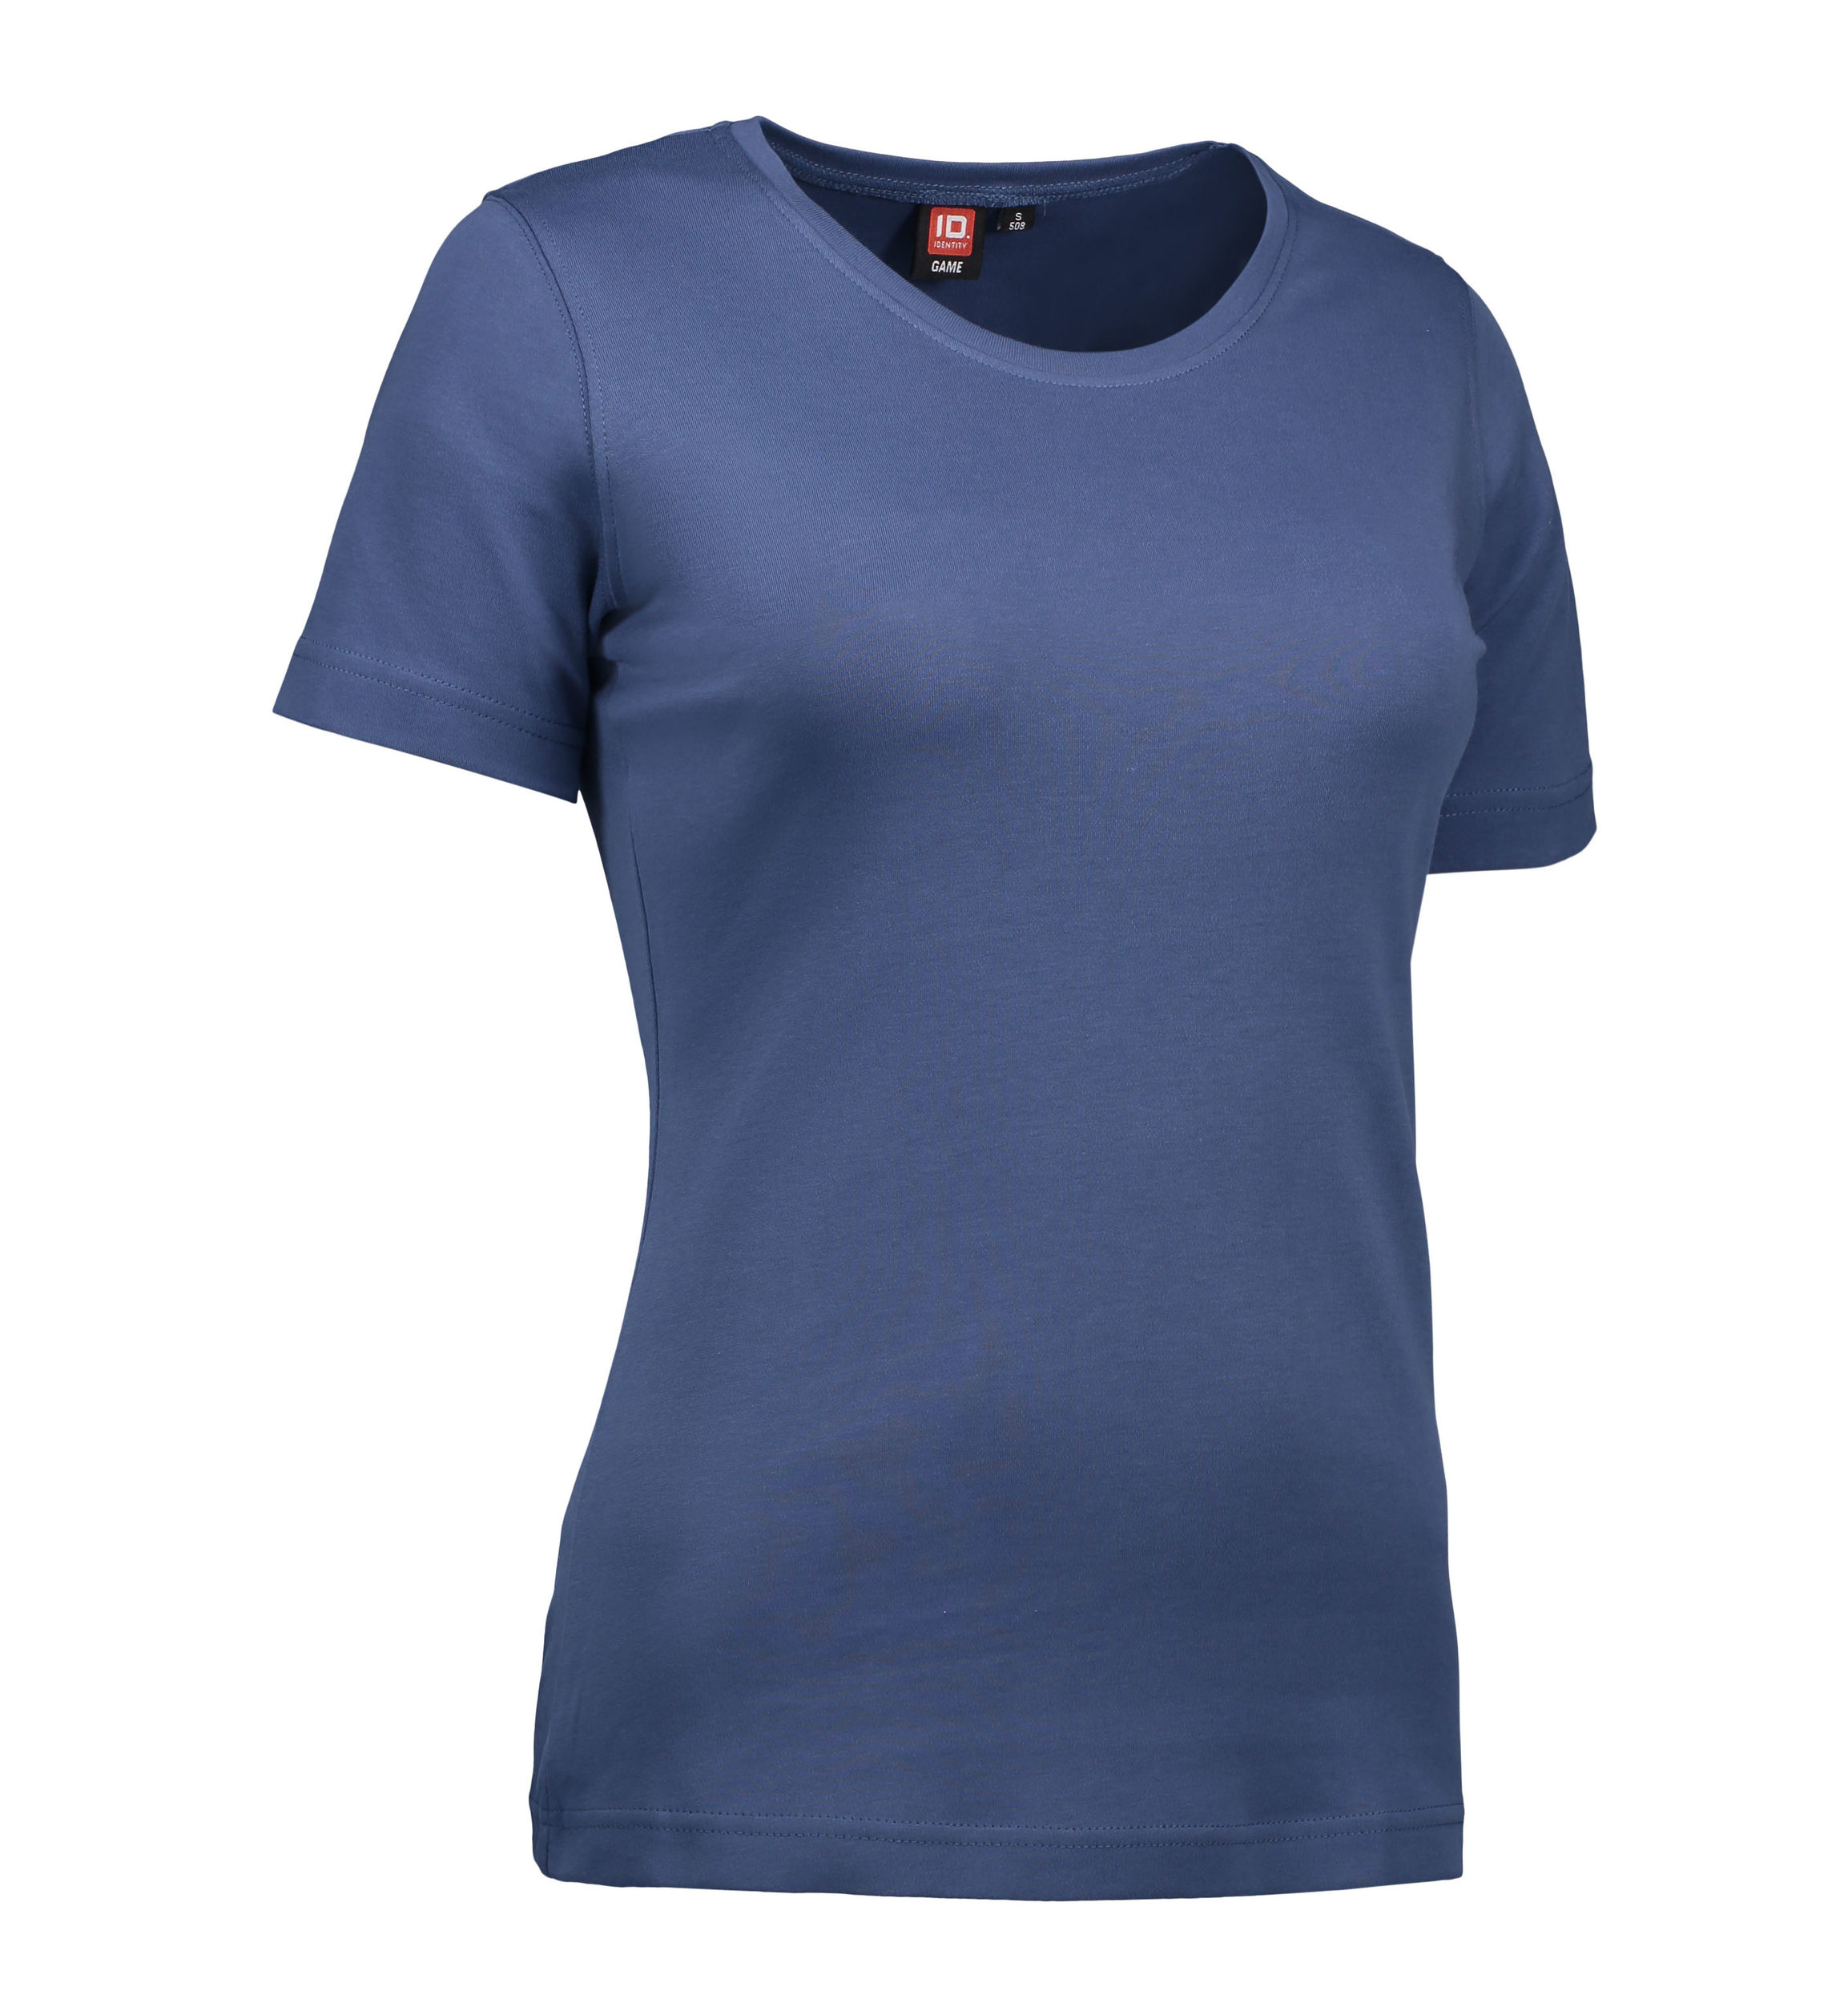 Billede af Indigo farvet t-shirt med rund hals til damer - L hos Sygeplejebutikken.dk